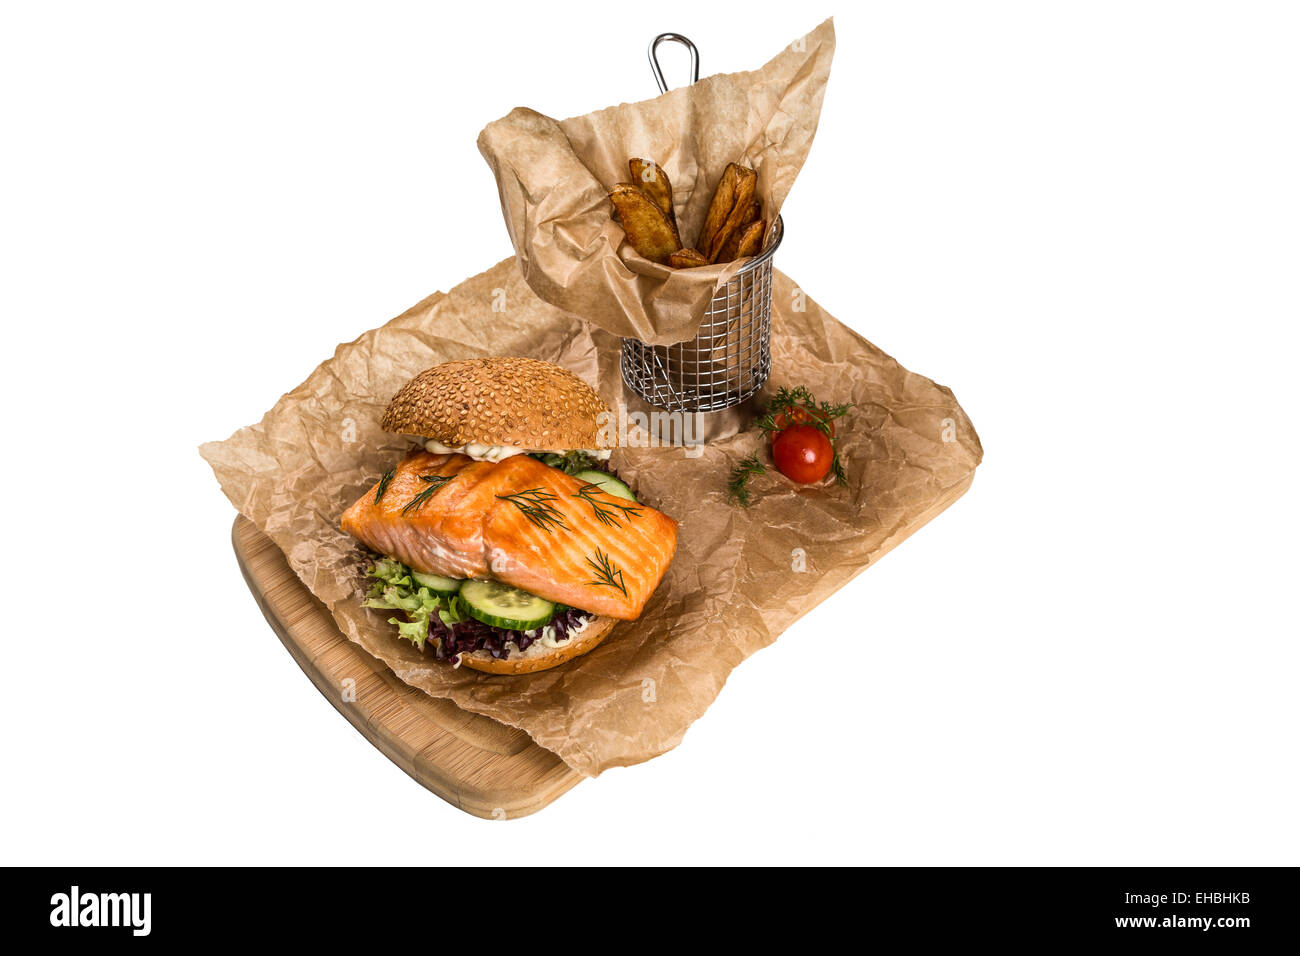 Ristorante piatto di servizio - burger con il salmone, la patata di frittura sulla tavola di legno Foto Stock